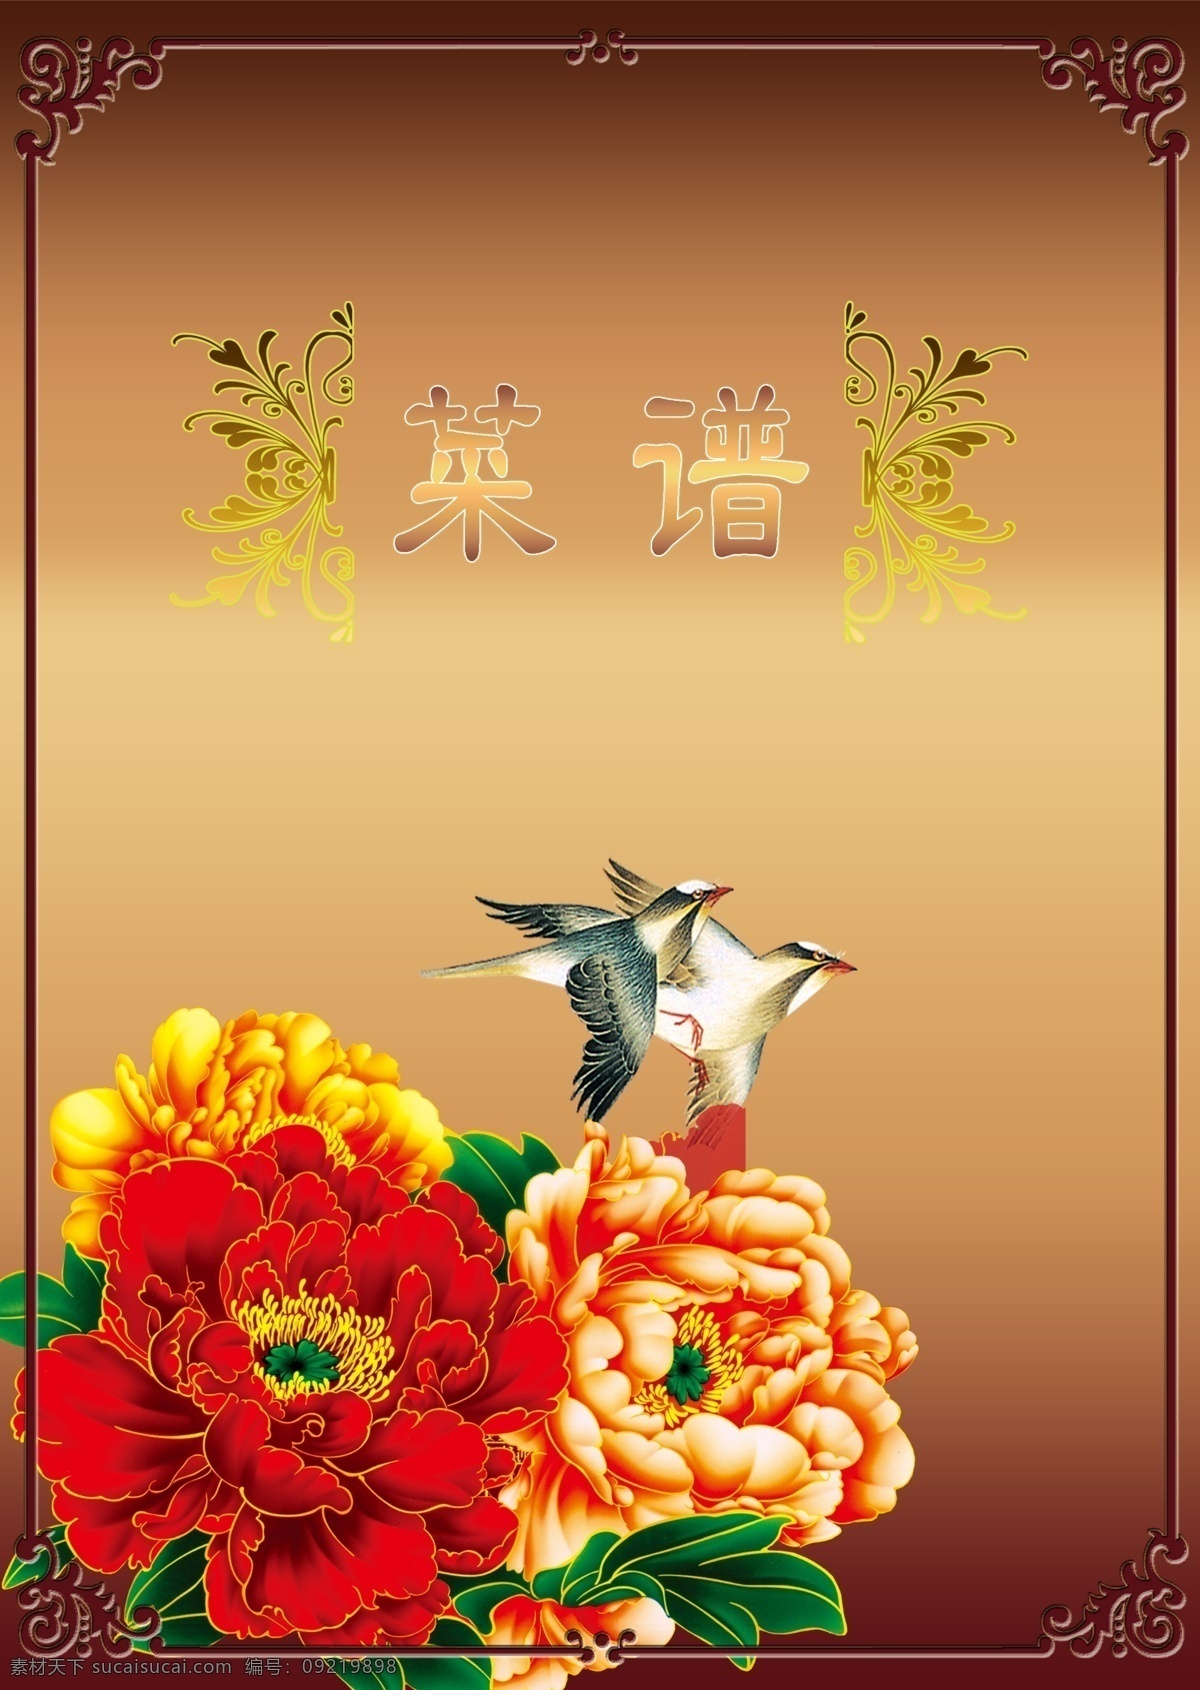 菜谱 封皮 边框 菜谱封皮 广告设计模板 花朵 牡丹 源文件 其他海报设计